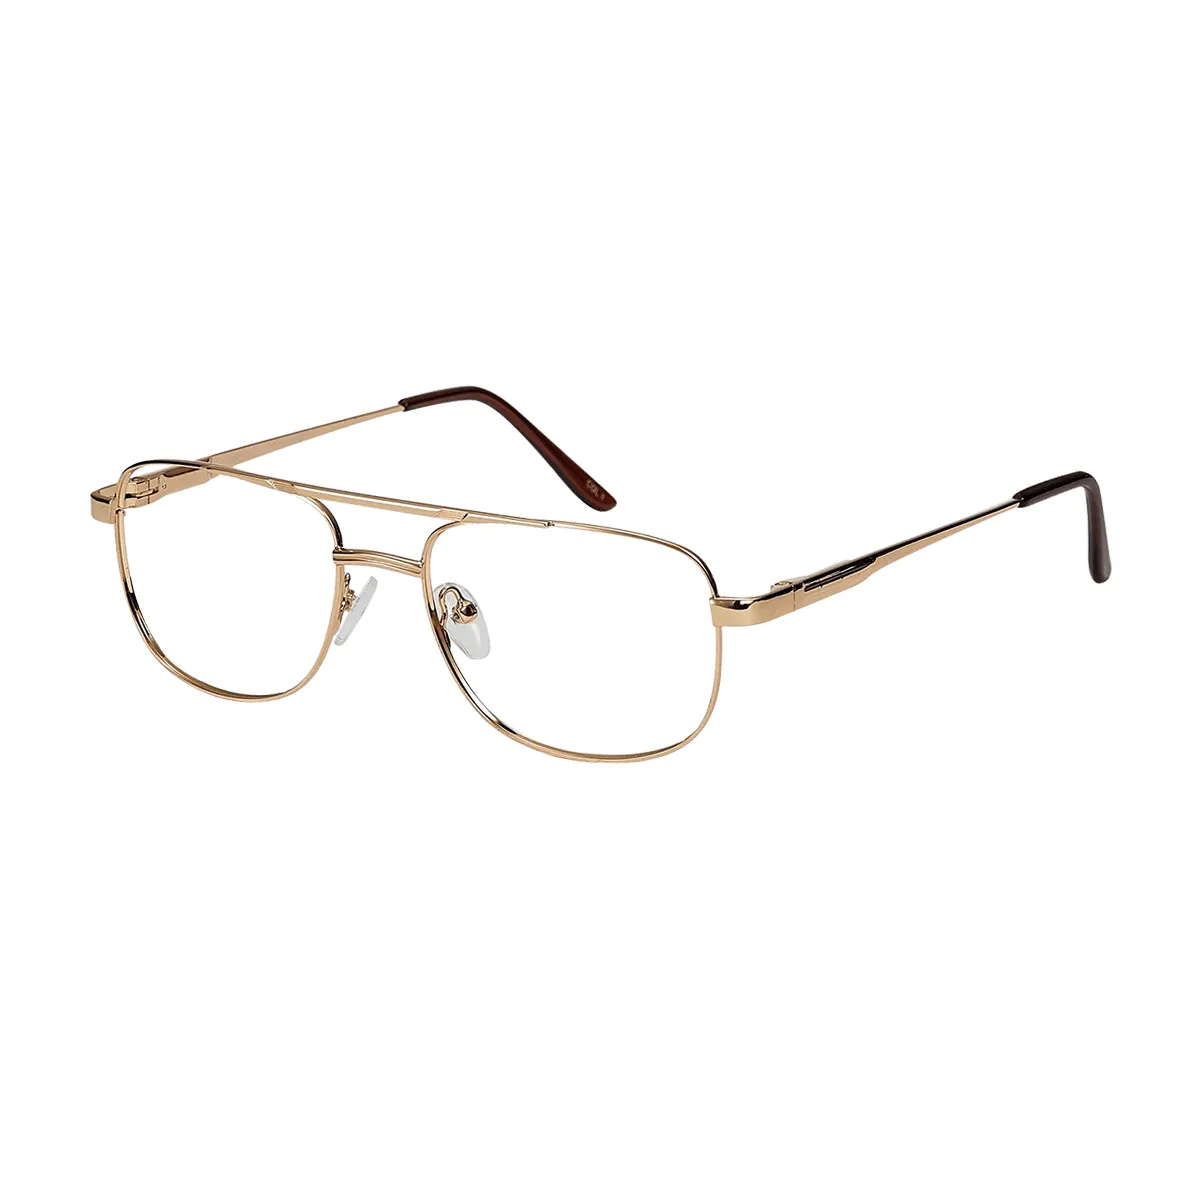 Manuel - Aviator  Glasses for Men